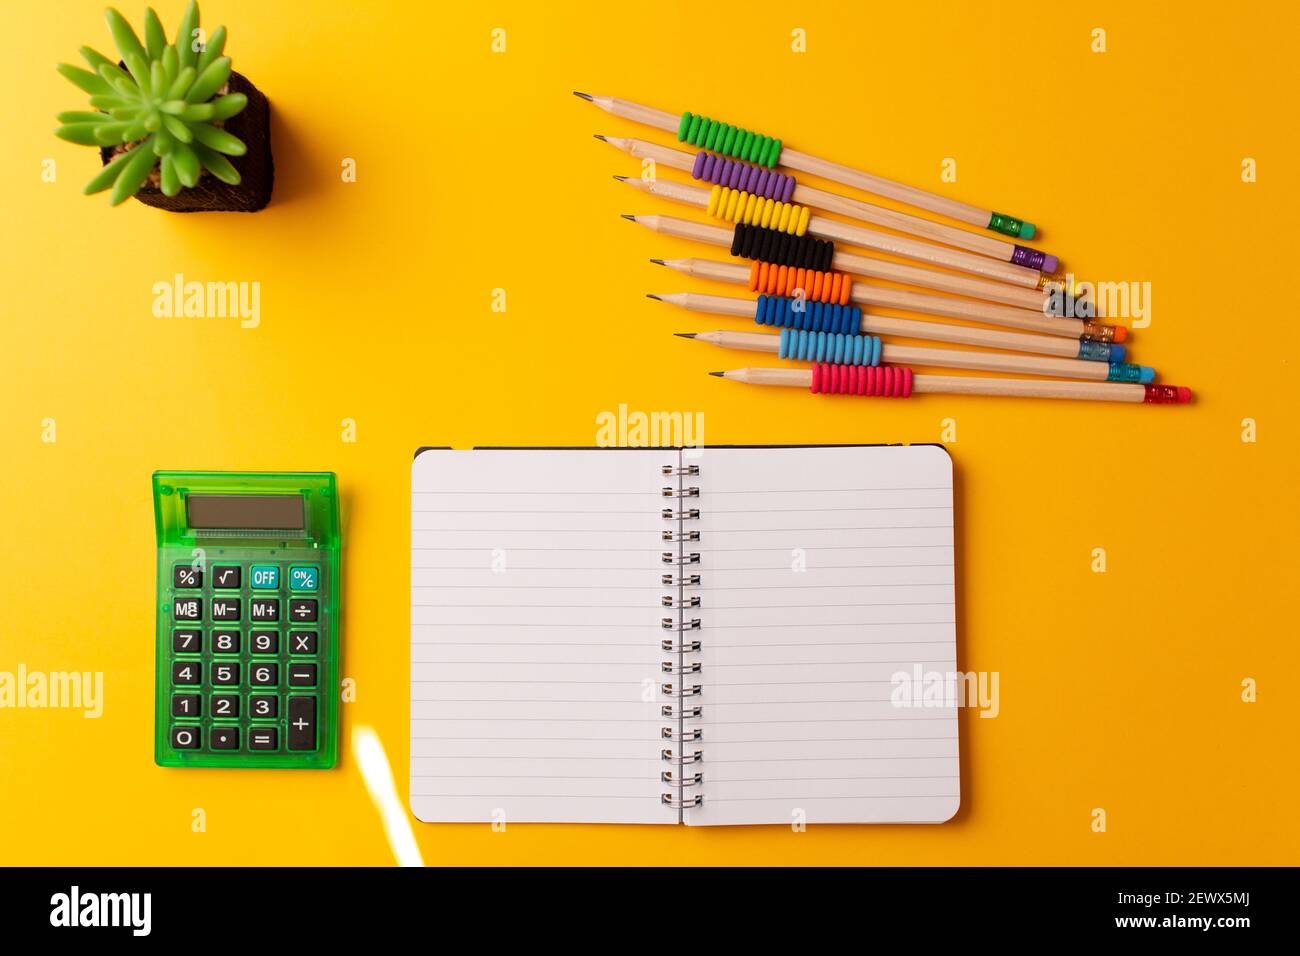 Eine Draufsicht auf ein Tagebuch, einen Taschenrechner, Bleistifte und eine Pflanze auf gelbem Hintergrund Stockfoto